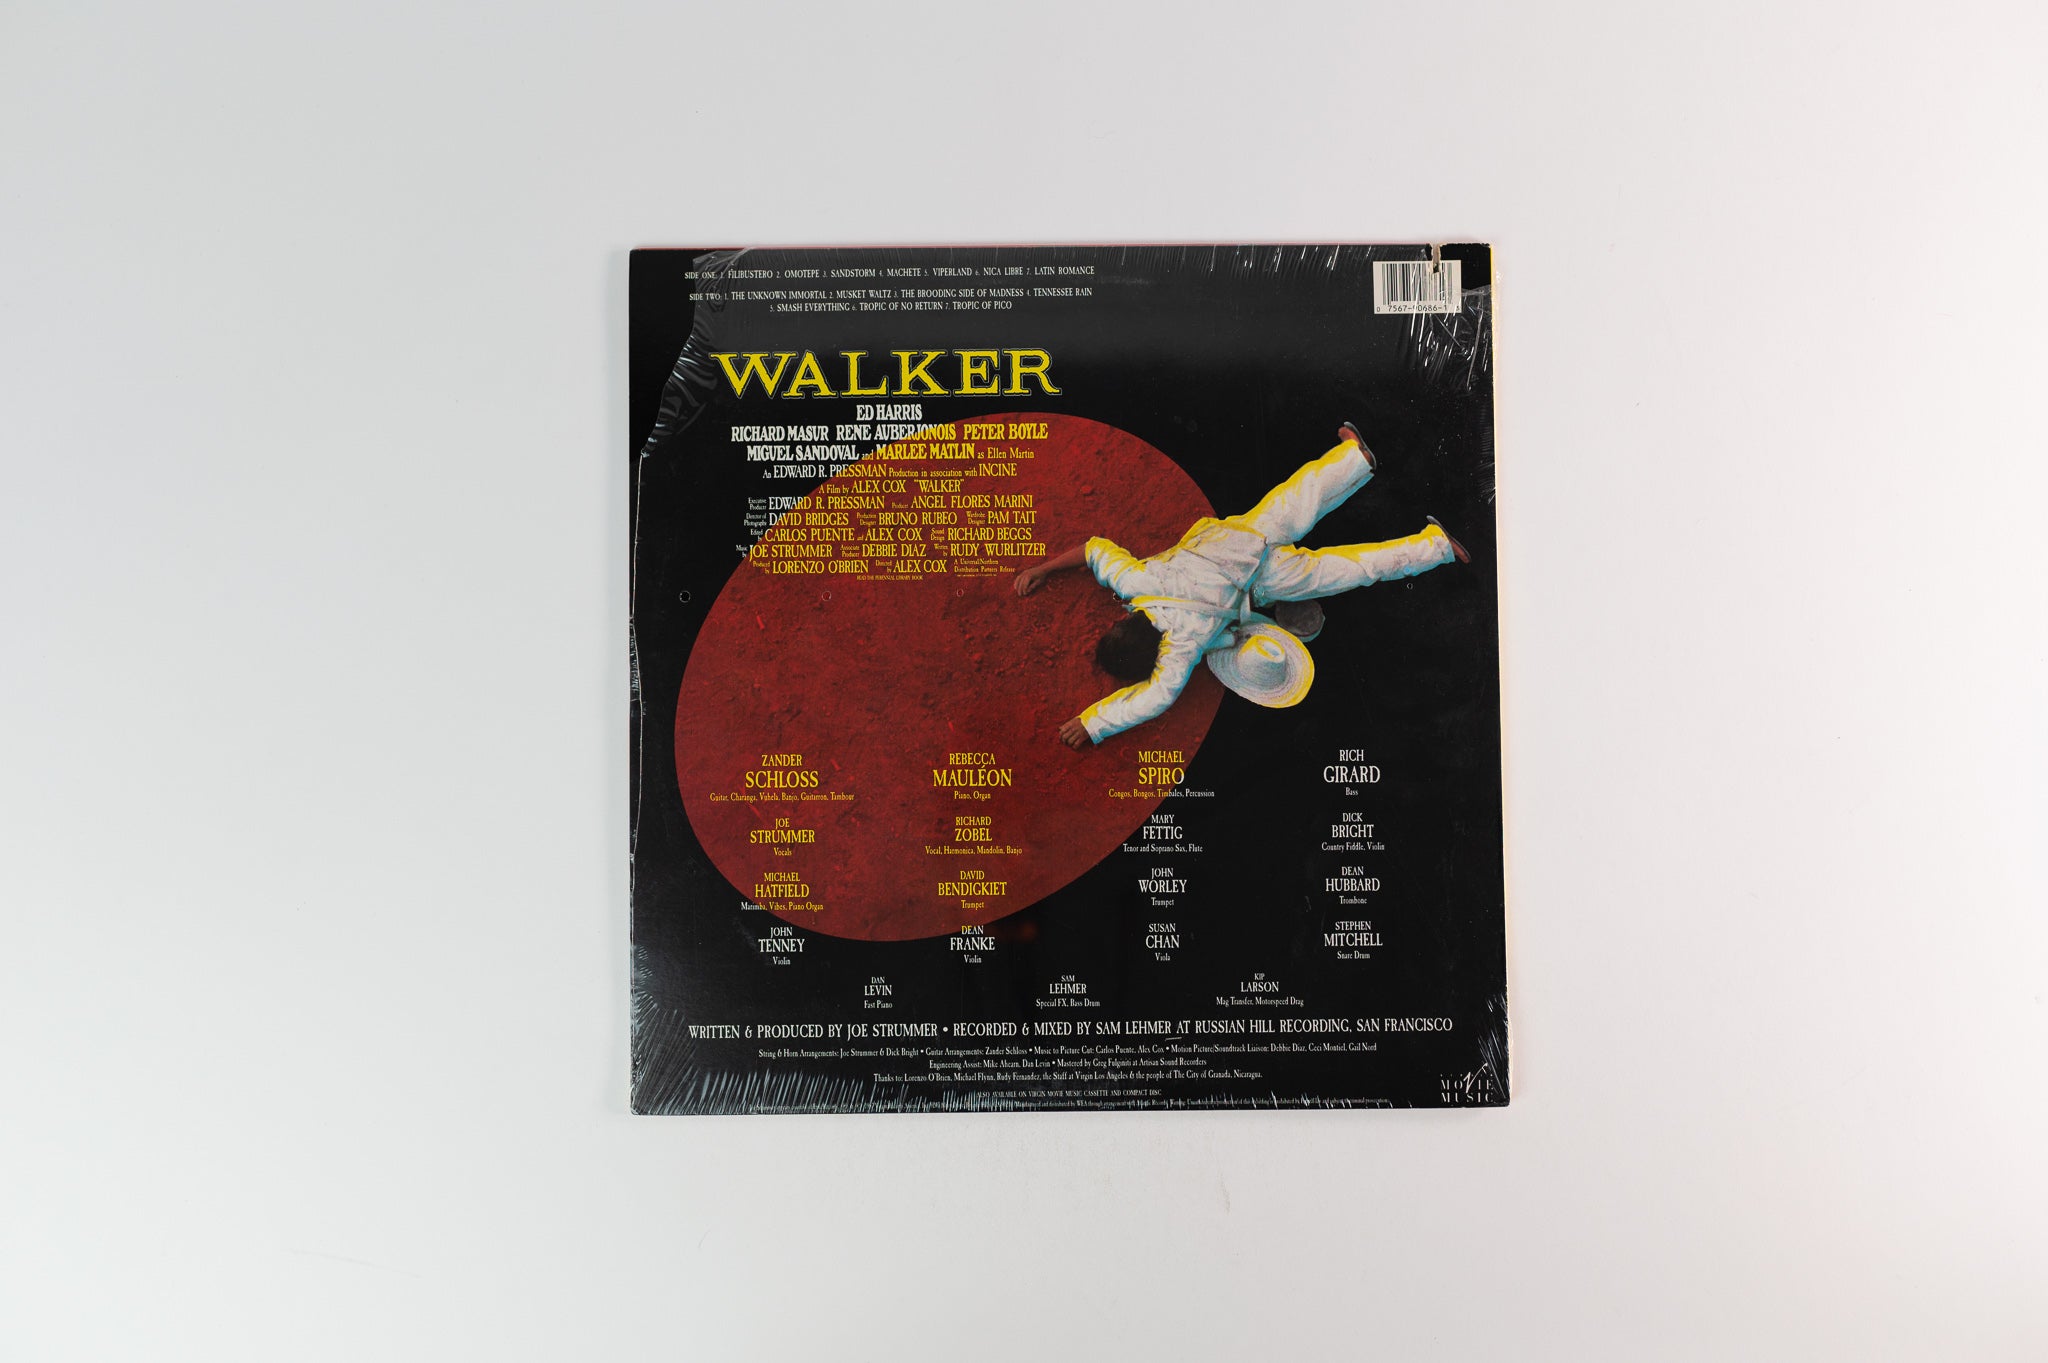 Joe Strummer - Walker (Original Motion Picture Soundtrack) on Virgin Movie Music Sealed